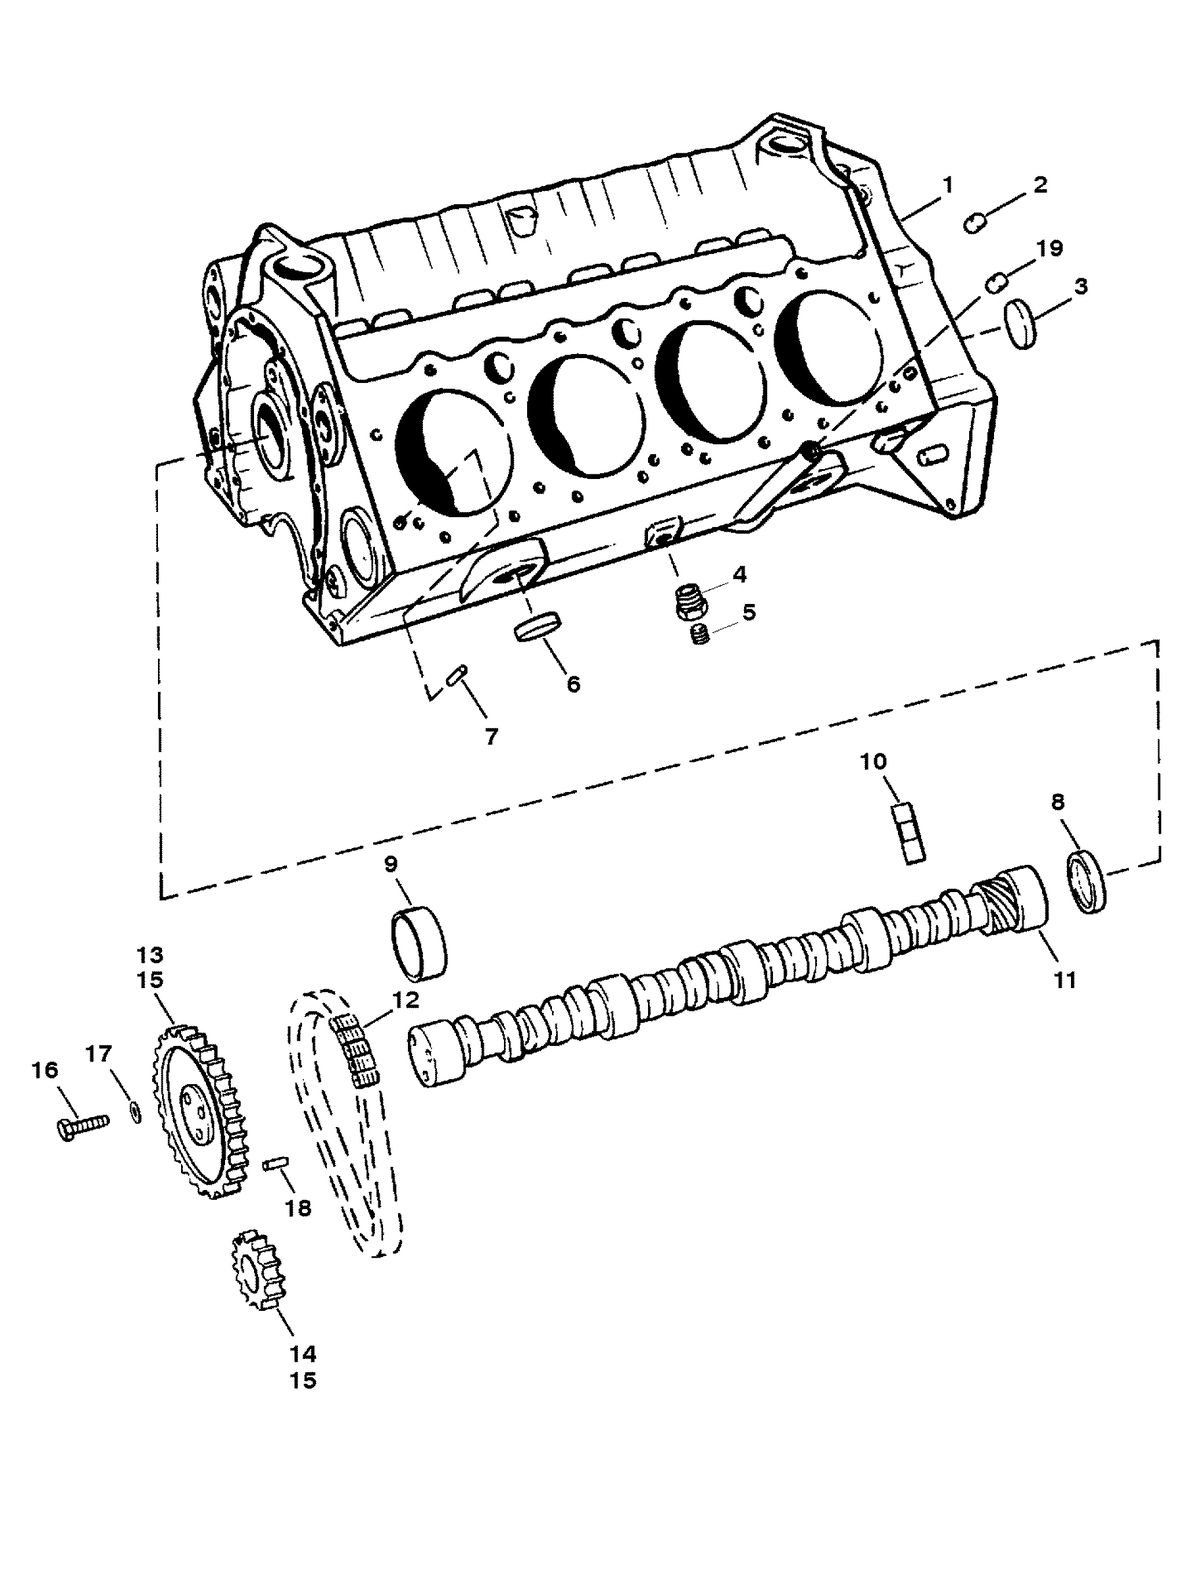 MERCRUISER 5.7L INBOARD ENGINE CYLINDER BLOCK AND CAMSHAFT